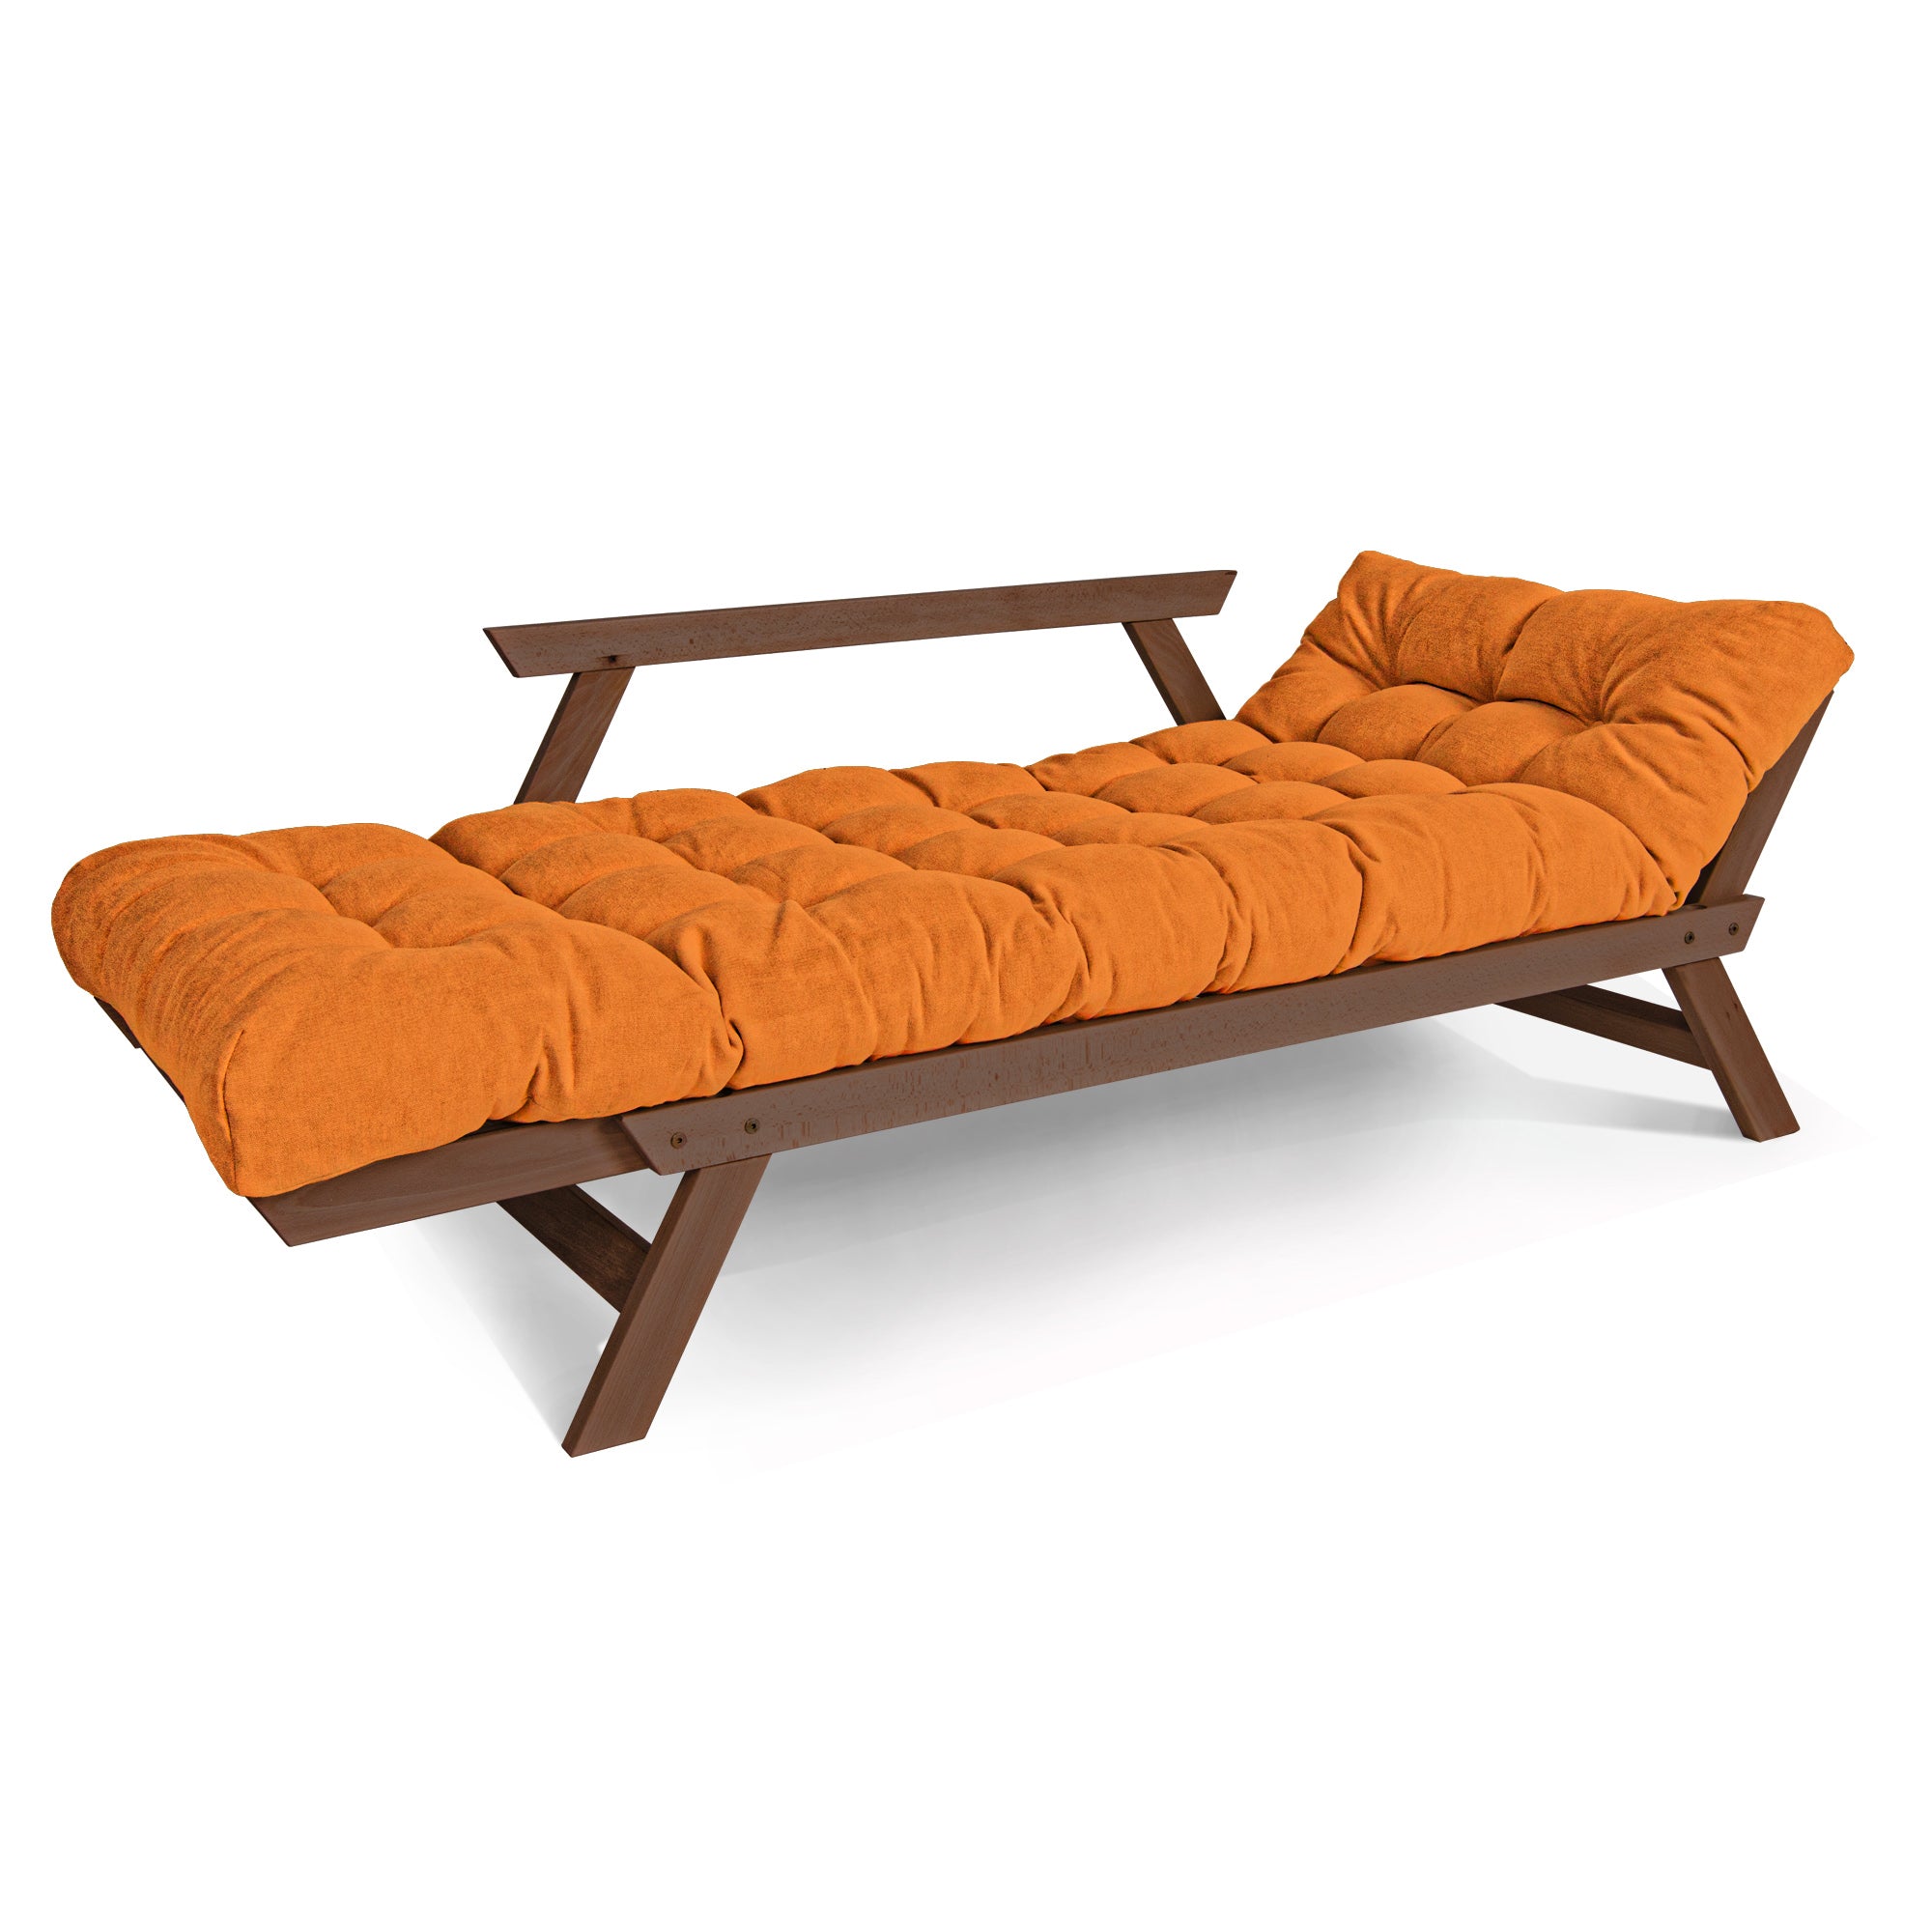 ALLEGRO Canapé-lit, cadre en bois de hêtre, couleur noyer